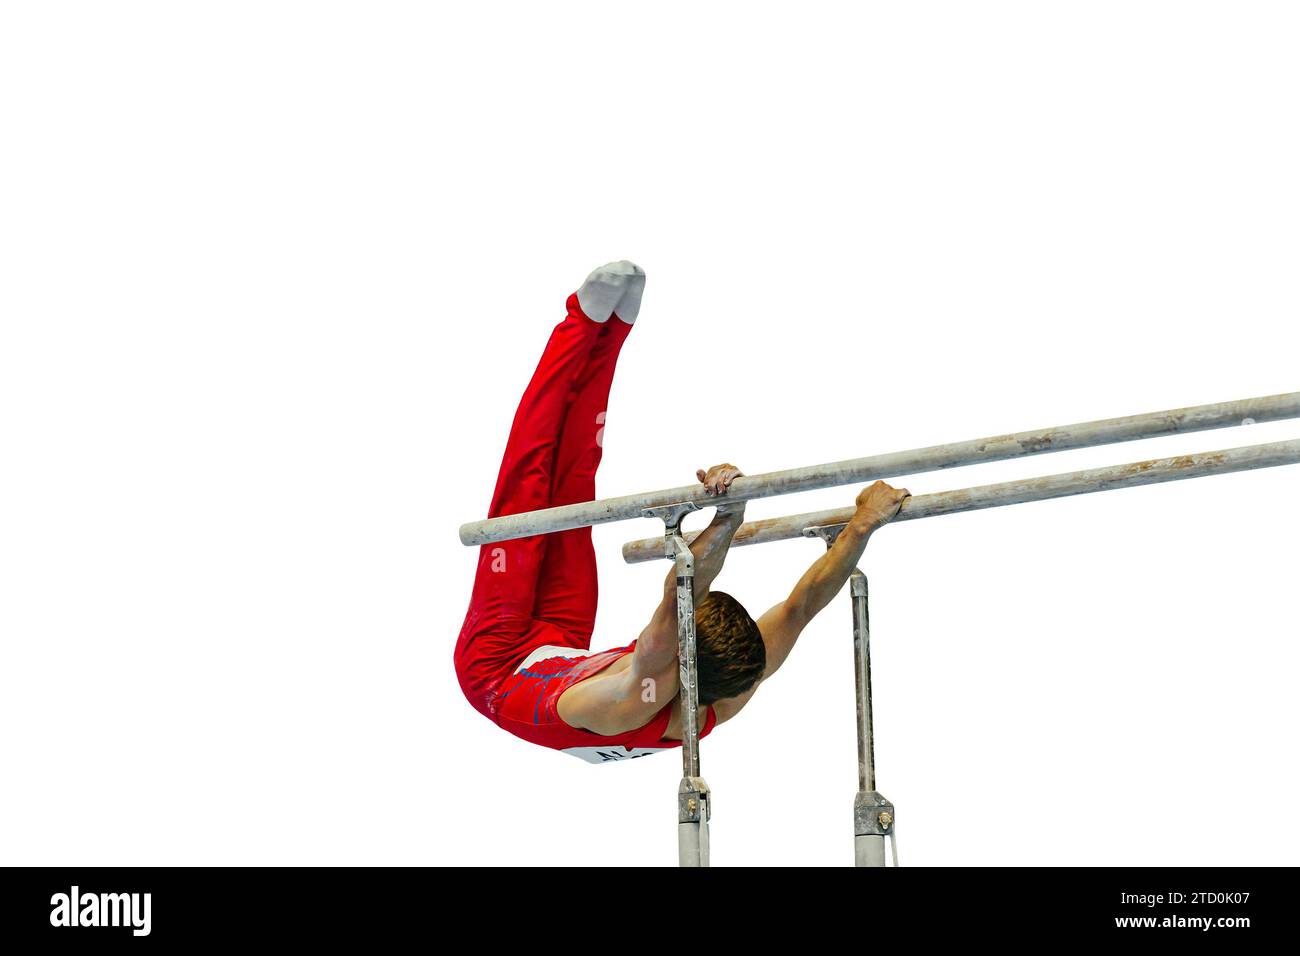 esercizio di ginnastica atletica su bar paralleli competizione ginnastica artistica isolata su sfondo bianco, giochi sportivi estivi Foto Stock